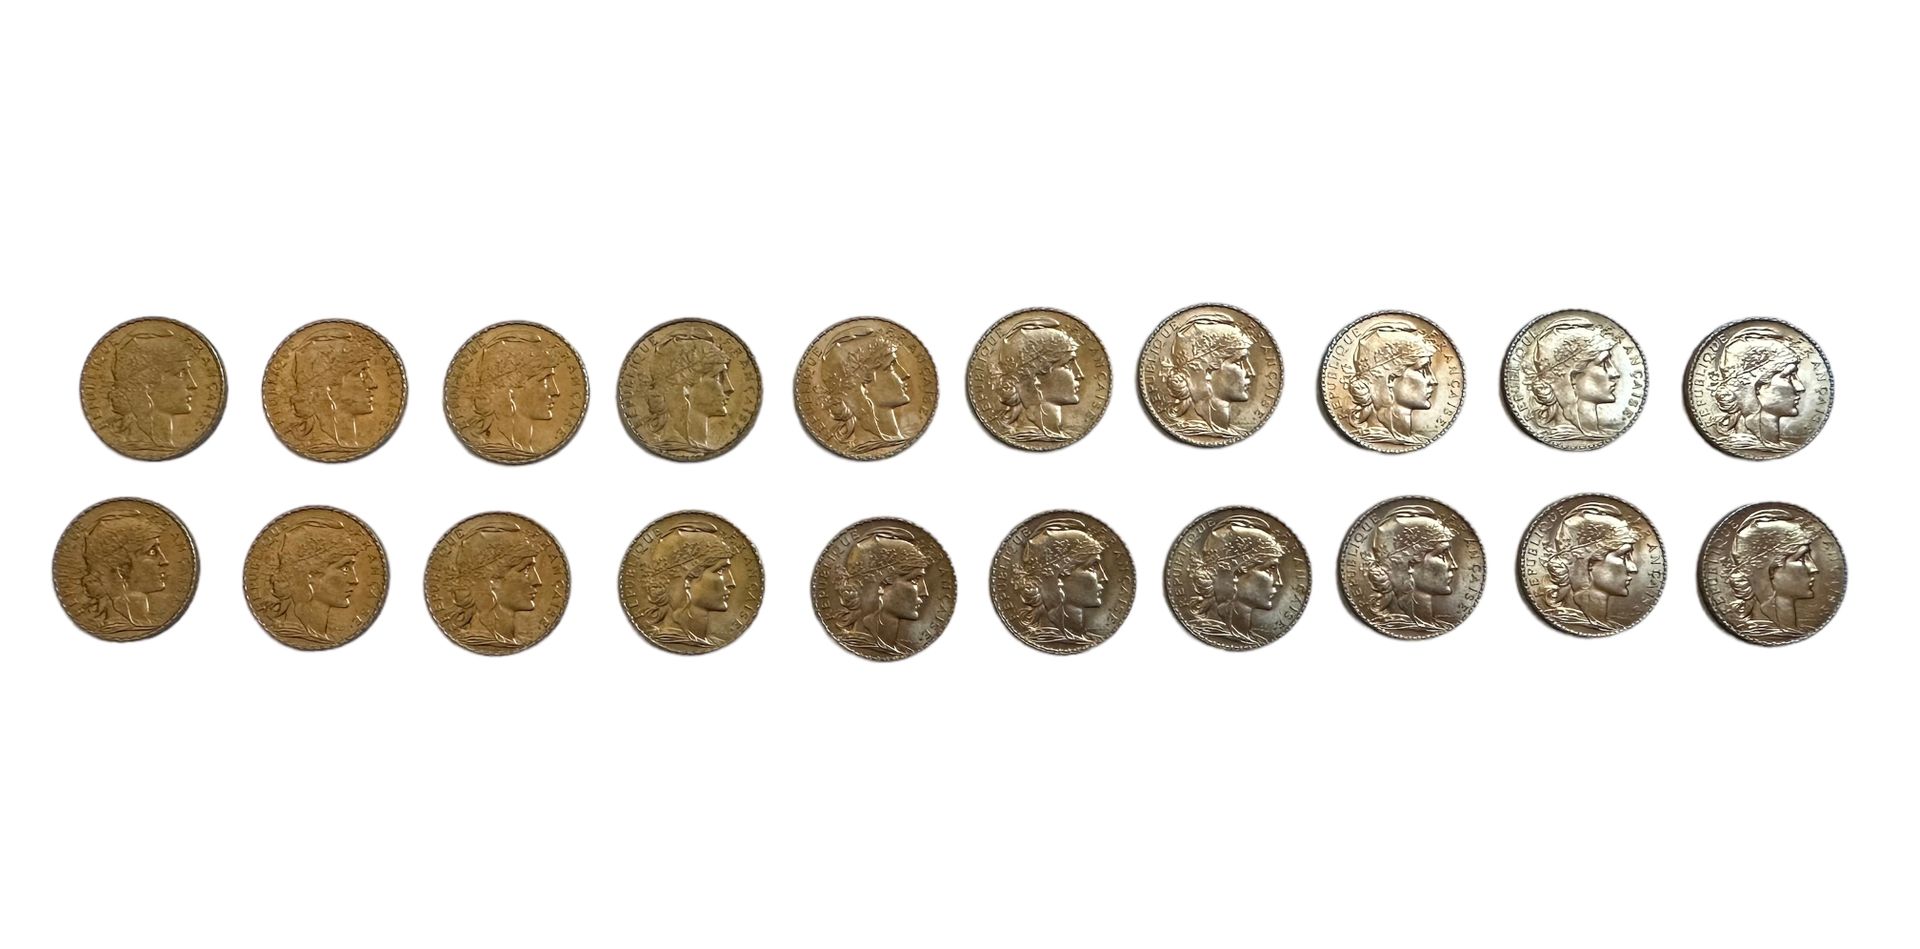 Null FRANKREICH
20 Goldmünzen zu 20 Francs mit Hahn.
Gewicht: 129 g